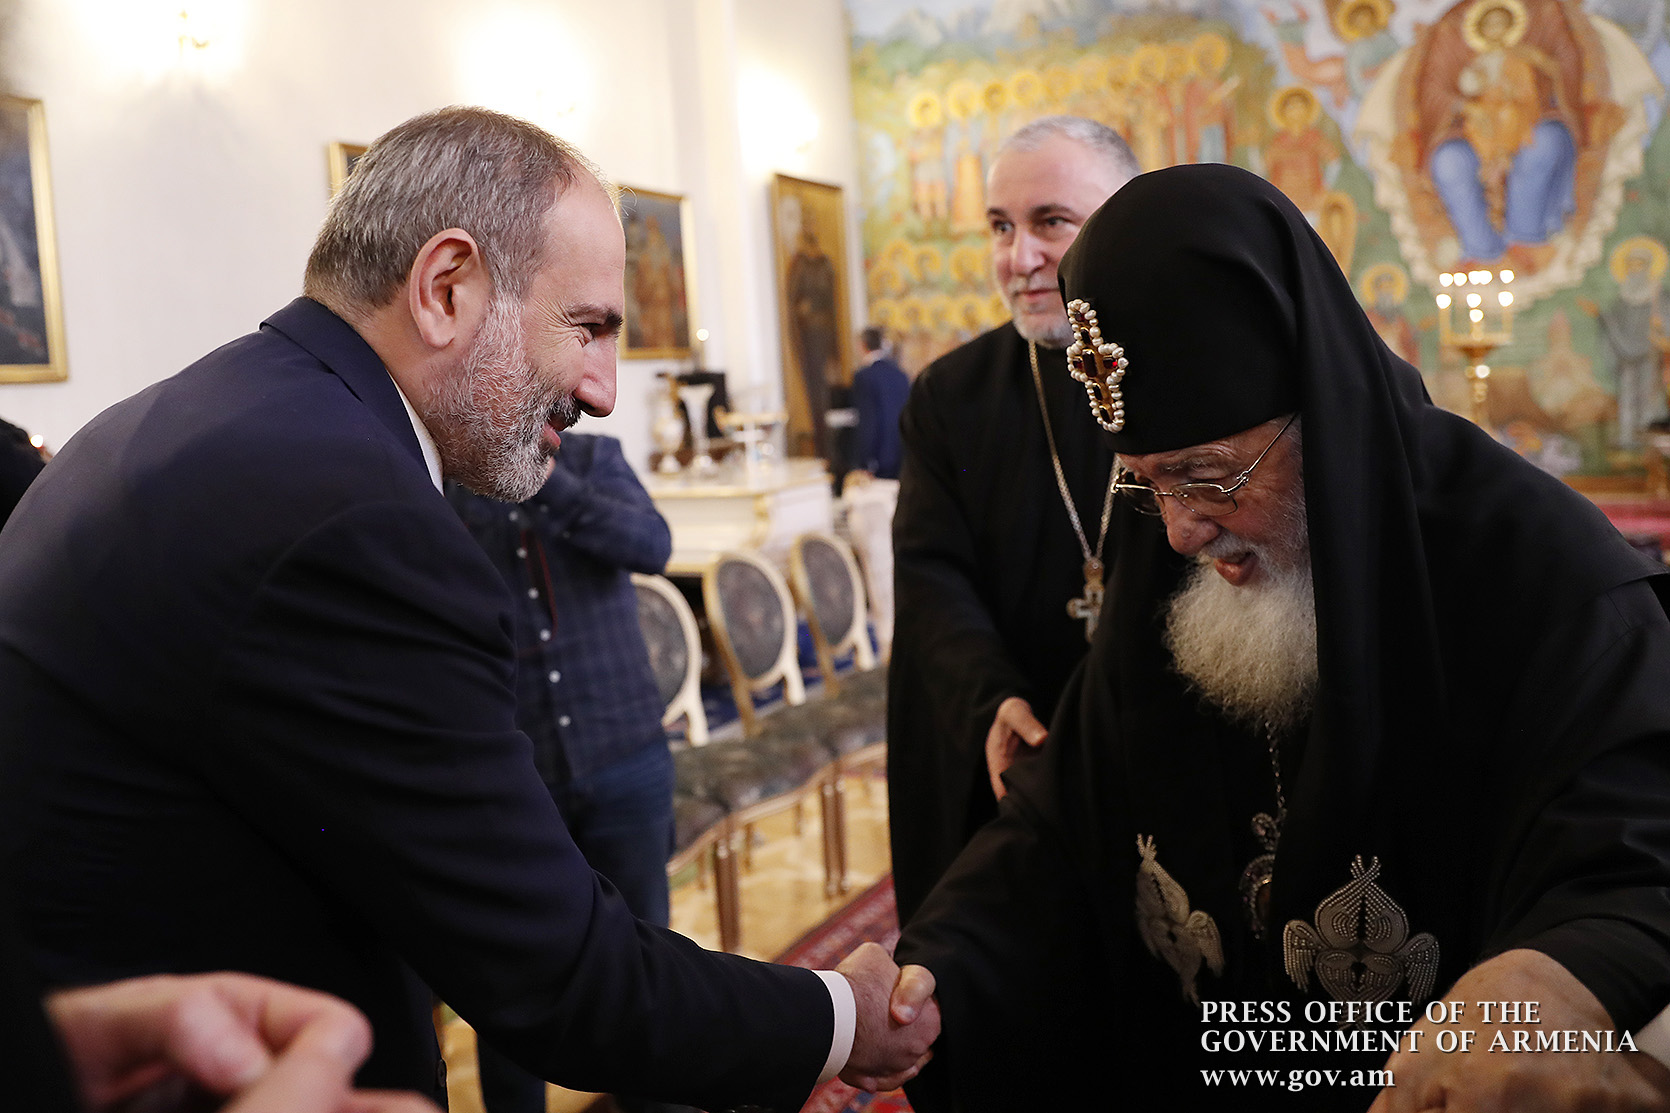 Илия II надеется, что отношения между церквями Армении и Грузии и впредь будут братскими